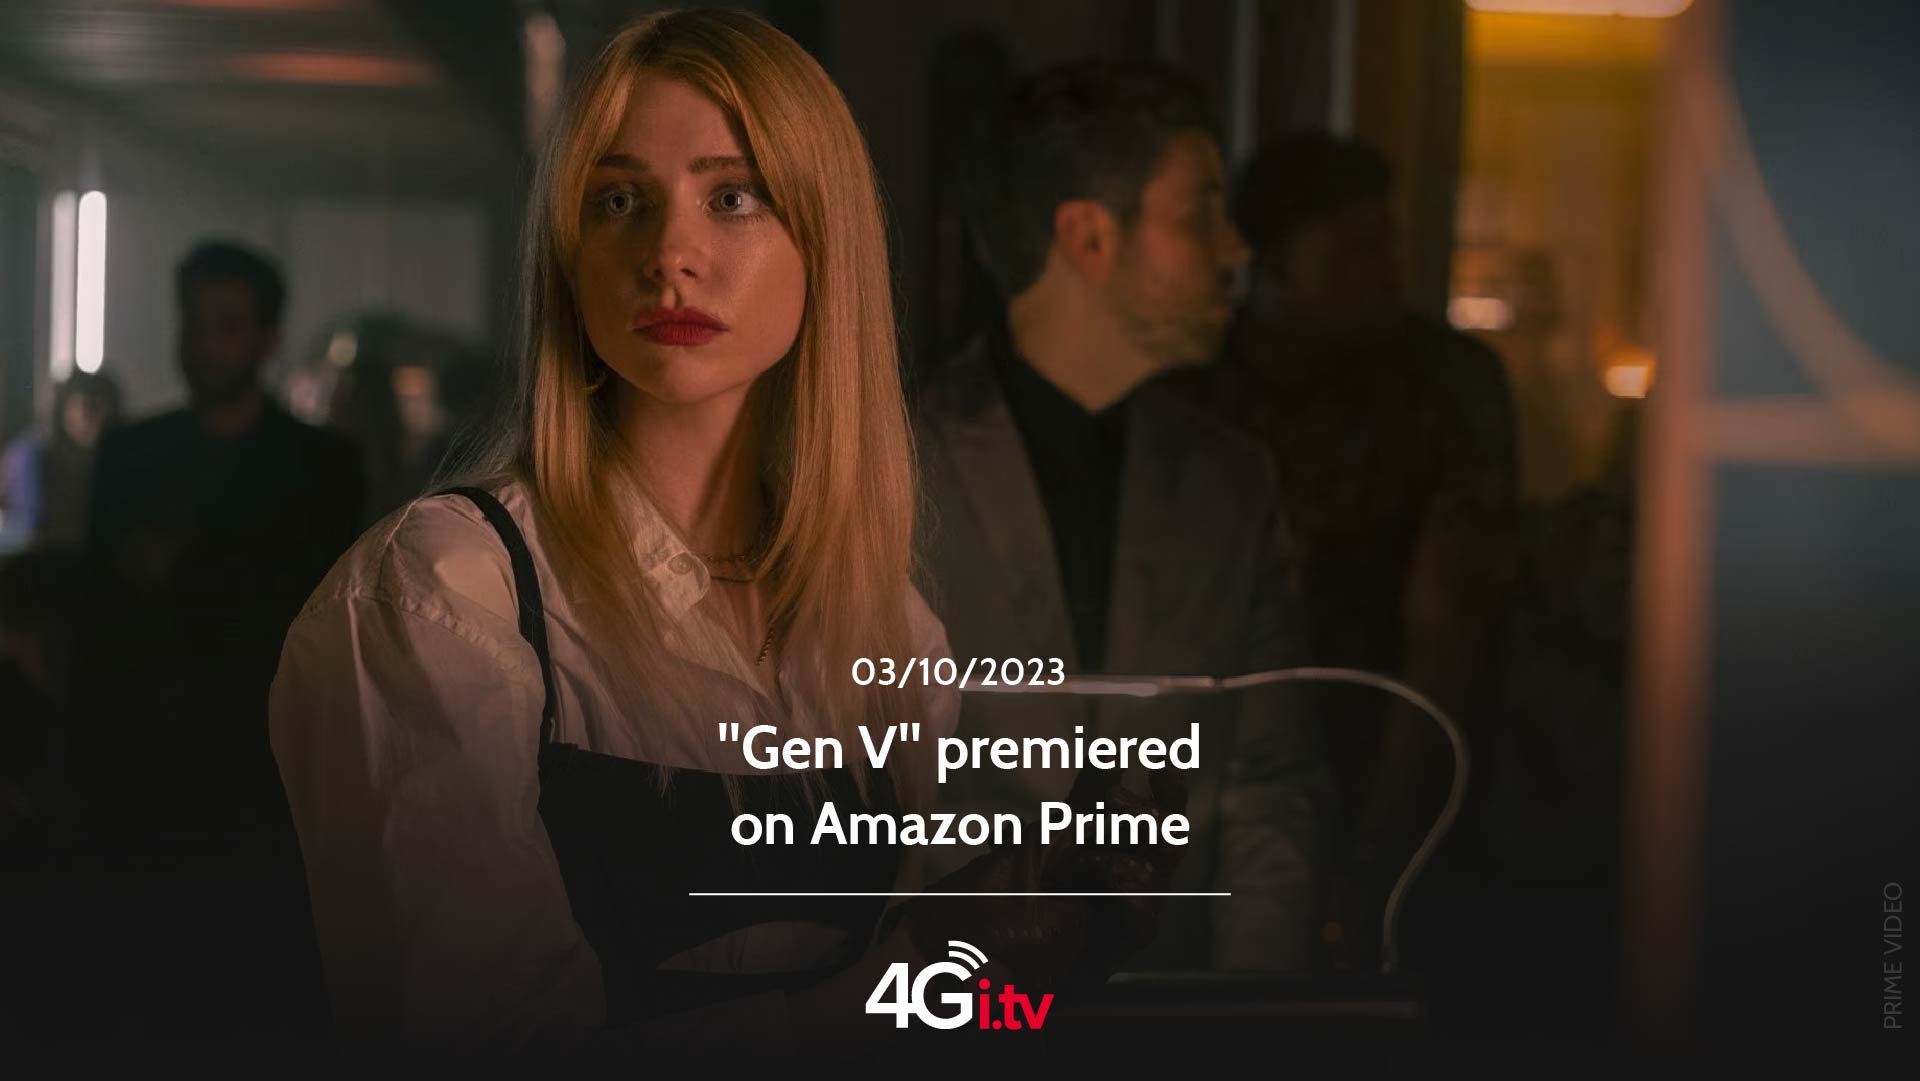 Подробнее о статье “Gen V” premiered on Amazon Prime